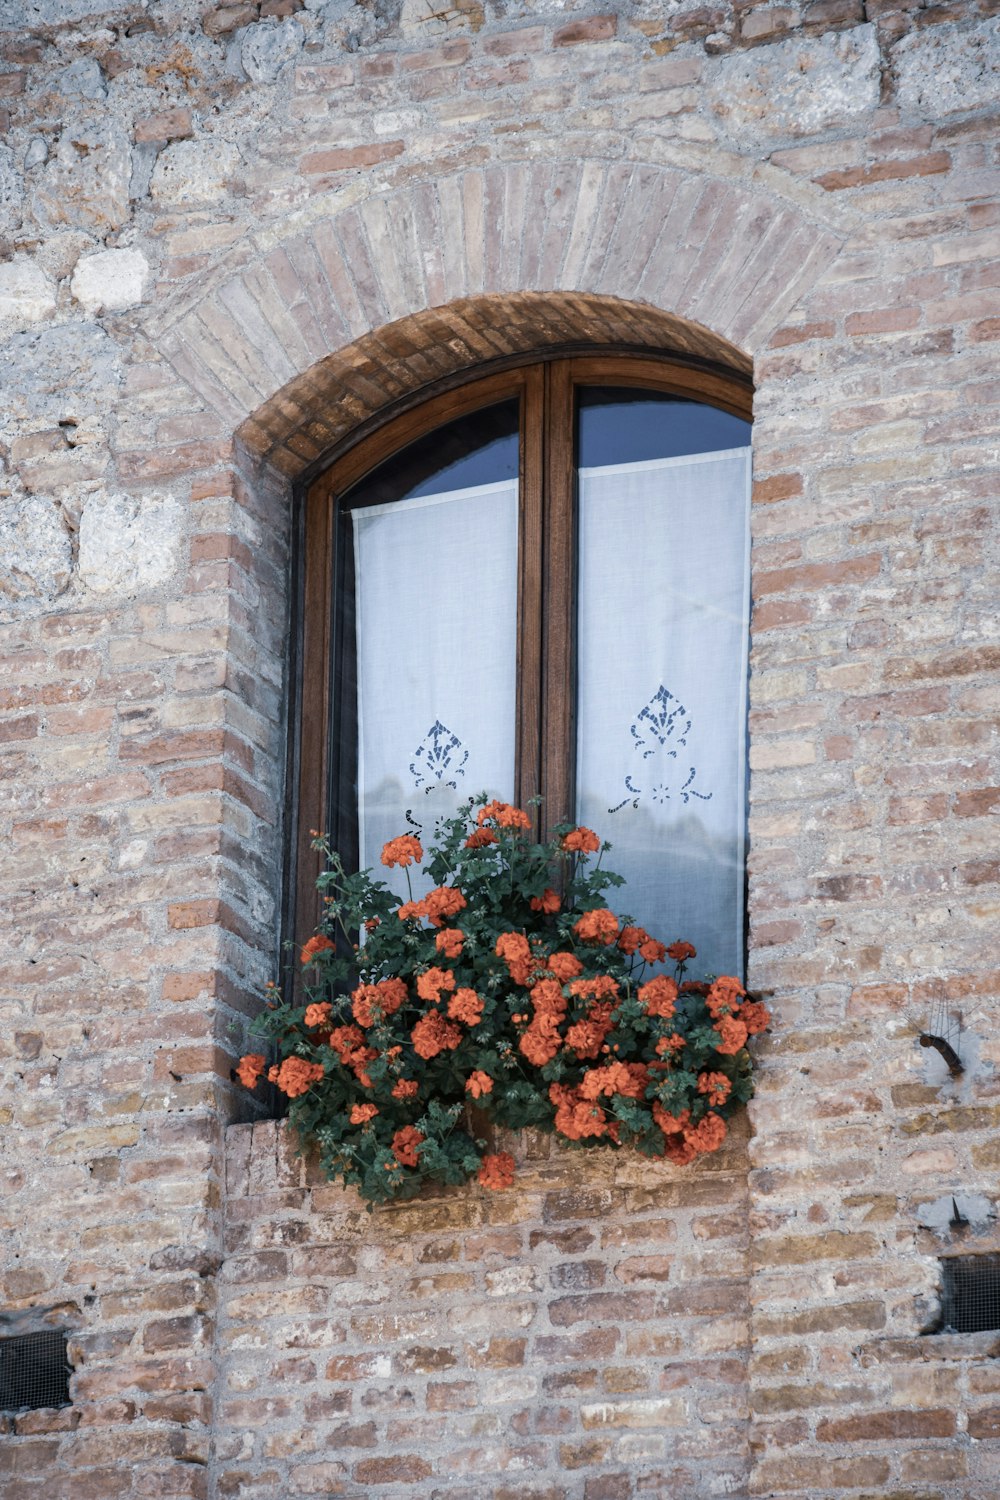 flower in window during daytime